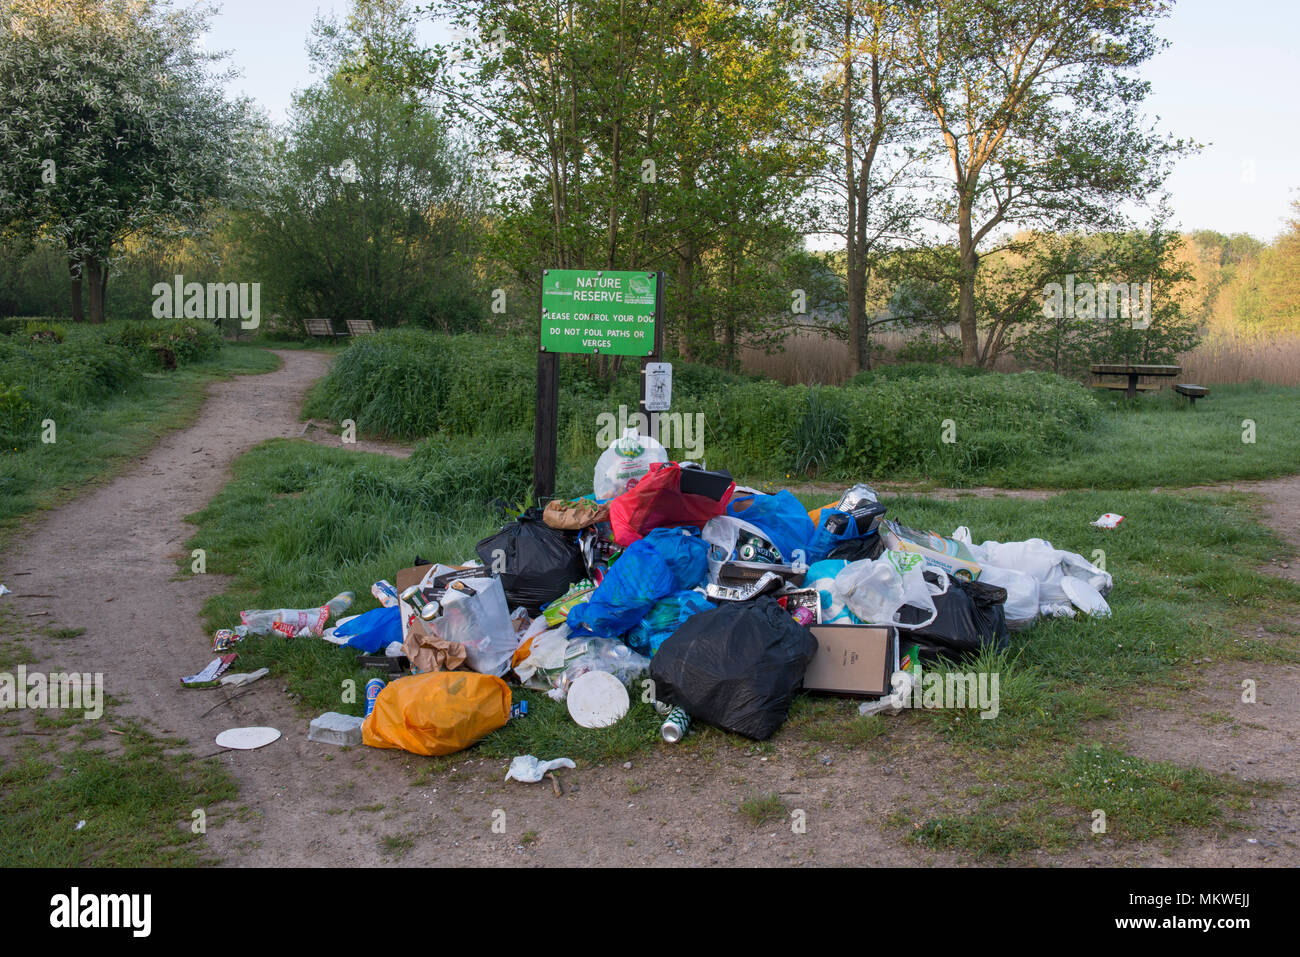 Les déchets et détritus laissés après un jour de mai vacances de banque à Blue Lagoon Nature Reserve, Bletchley, Bucks. Image prise le 8 mai 2018 Banque D'Images